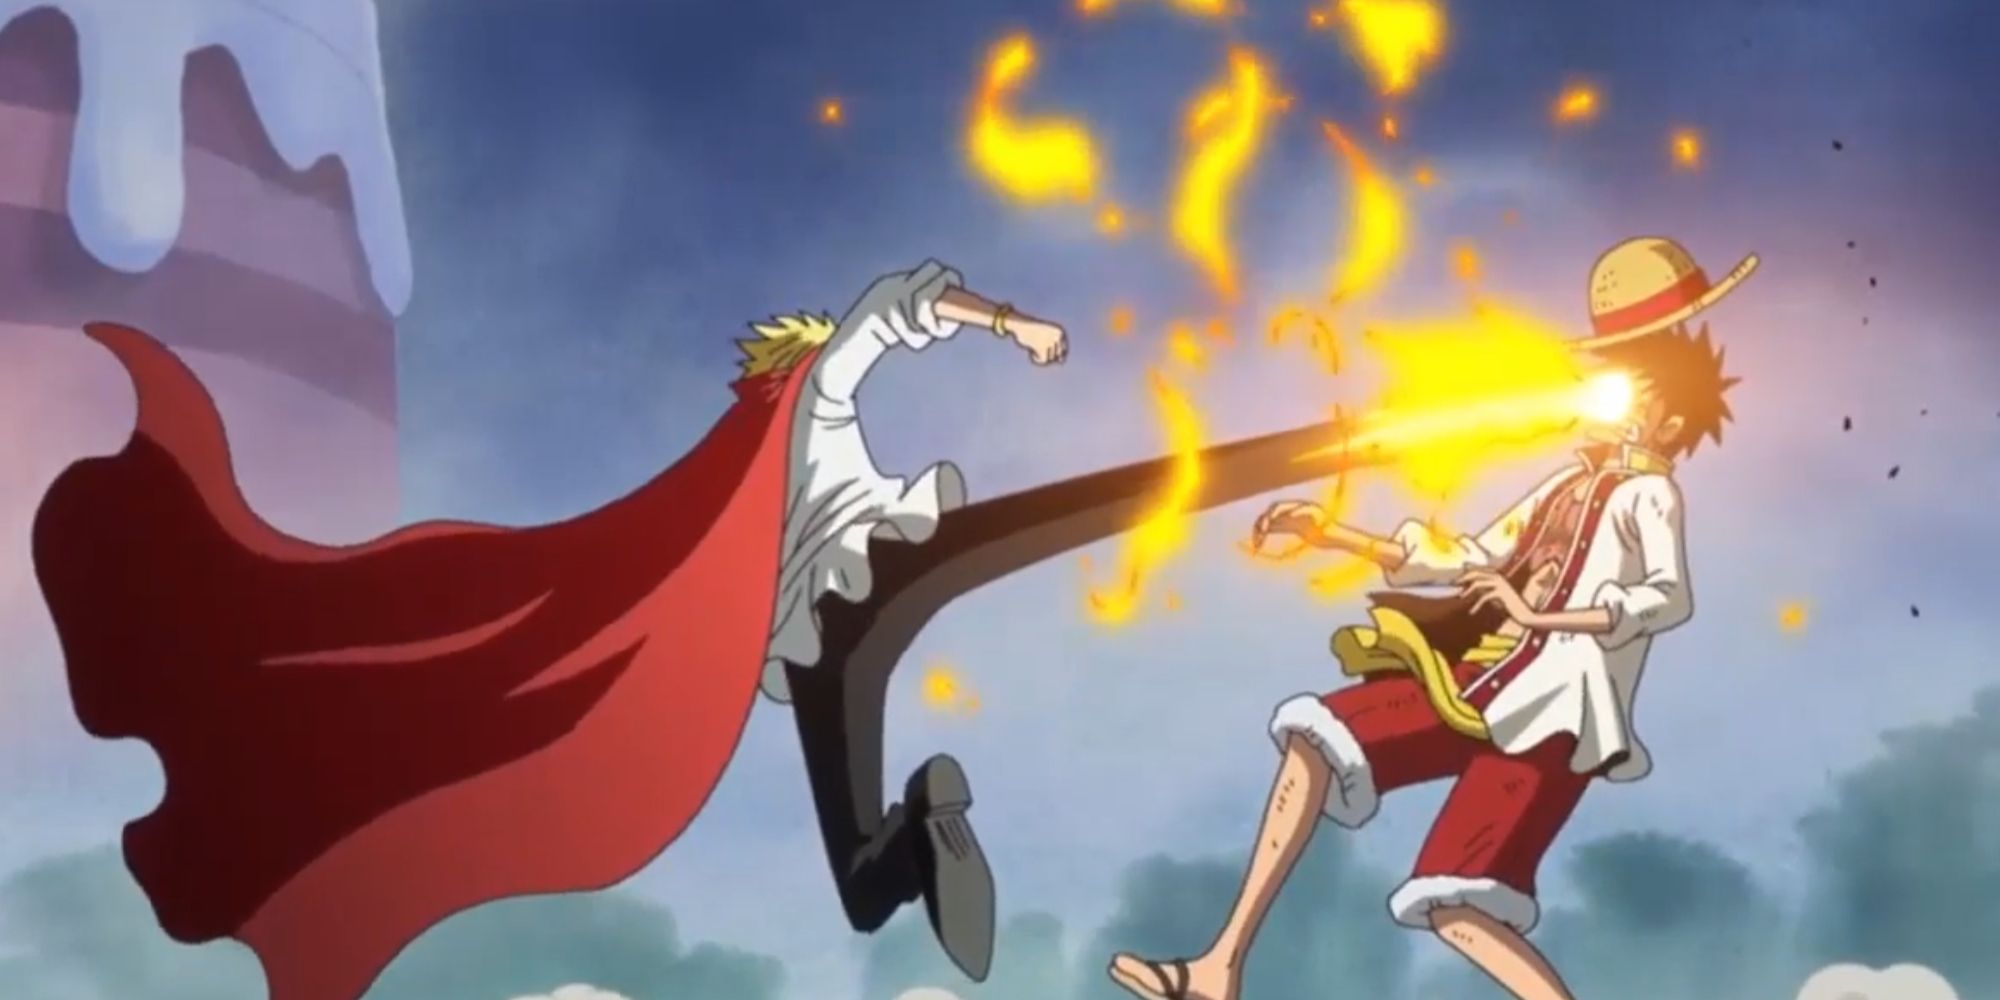 Sanji attacks Luffy